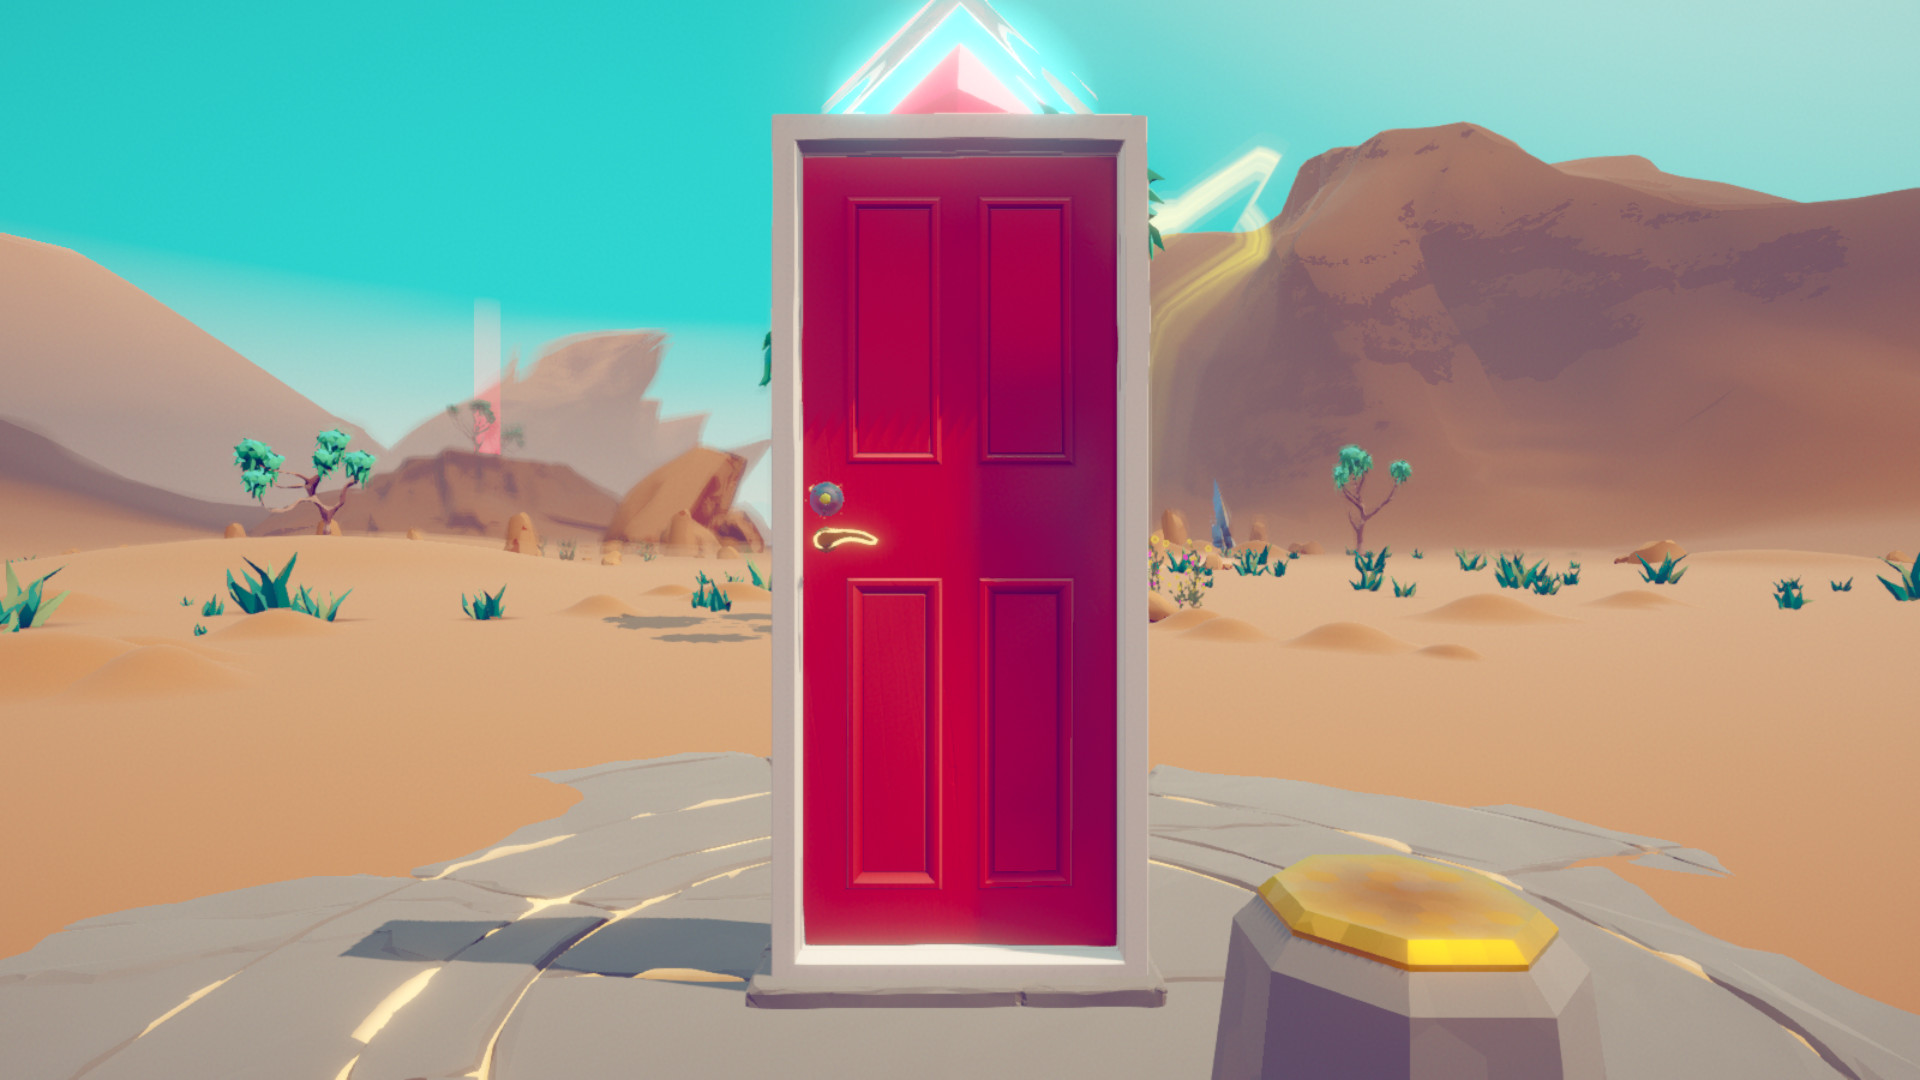 Doors treasures. Doors игра. Doors двери игра. Door в игре Дорс. Дверь в стиле игр.